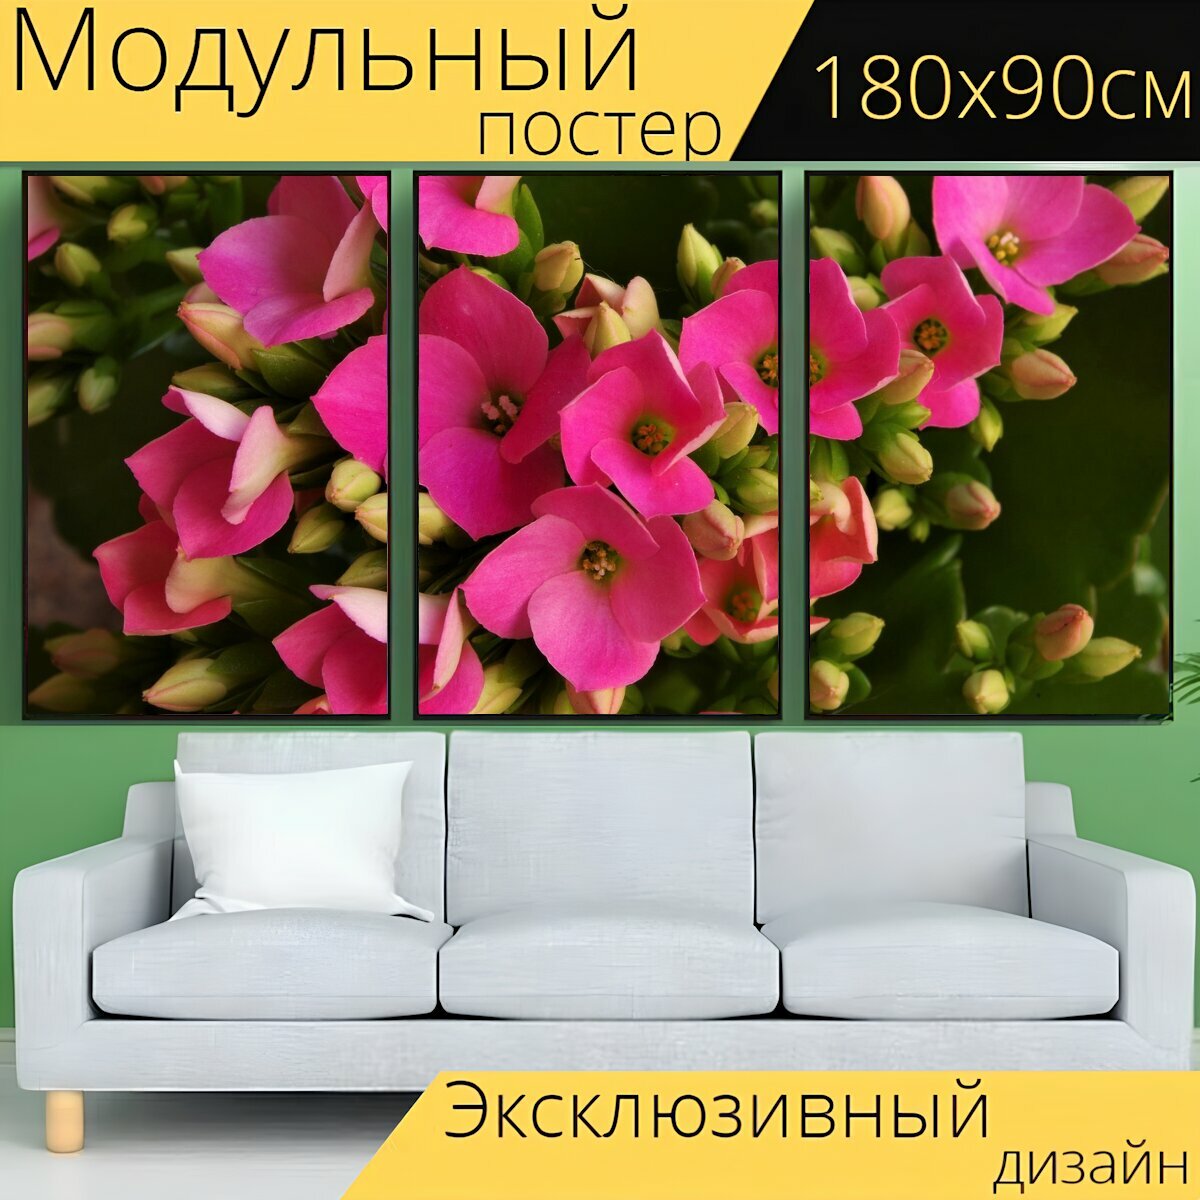 Модульный постер "Розовые цветы, розовый цветок, весна" 180 x 90 см. для интерьера